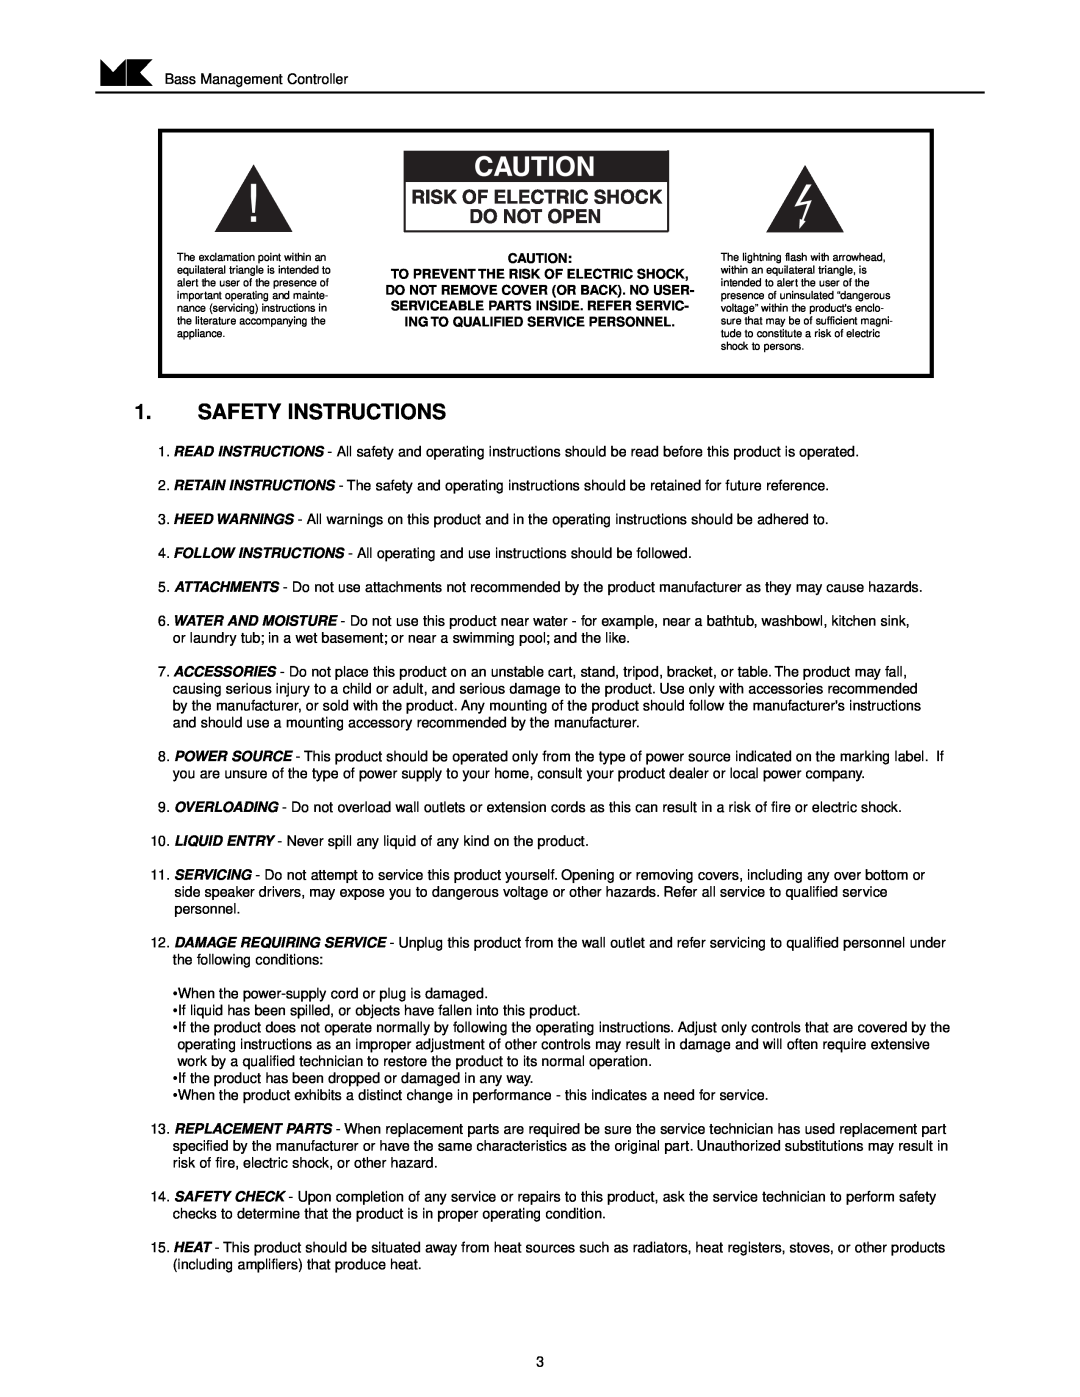 MK Sound LFE-4 operation manual Safety Instructions 